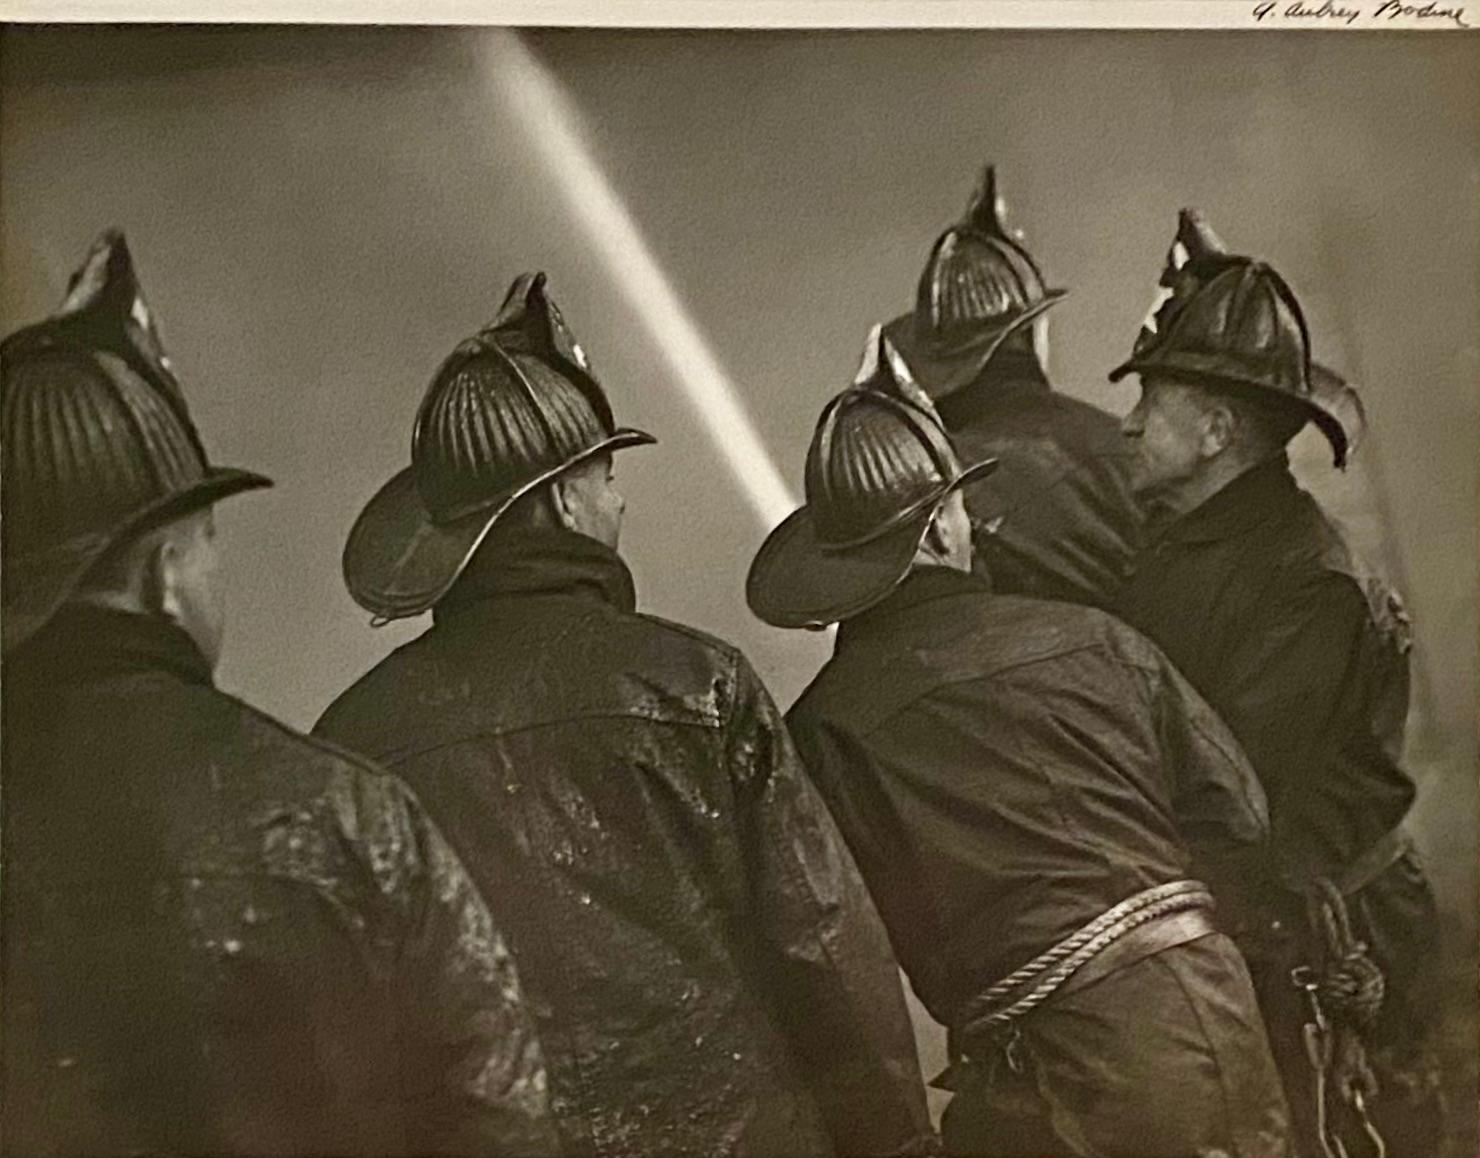 Beau pompier 1940s Mid Century WPA Era Modernism Baltimore Photographie en noir et blanc. A. Aubrey Bodine (américain, 1906-1970). Épreuve à la gélatine argentique, signée en haut à droite, cachet du photographe au verso, 11 x 14 in.

Dans les